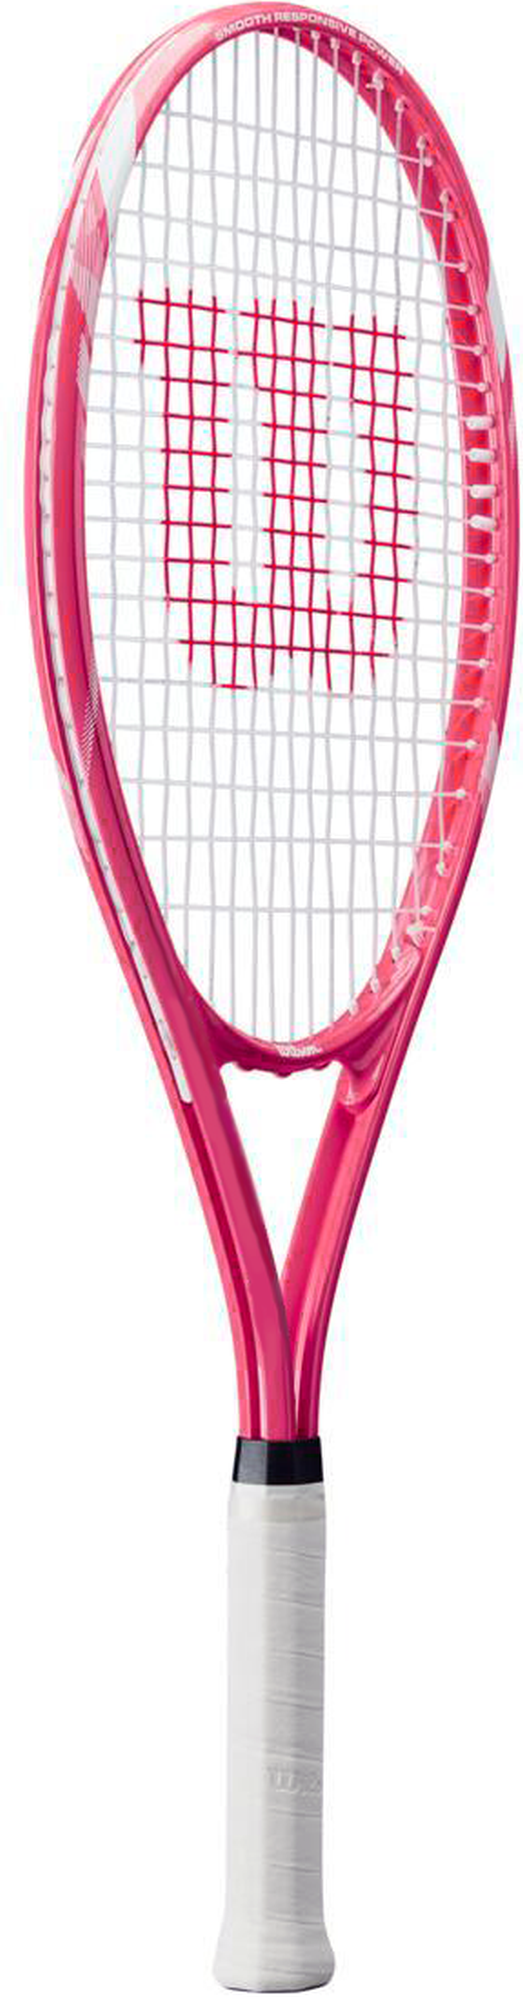 tennis racket png